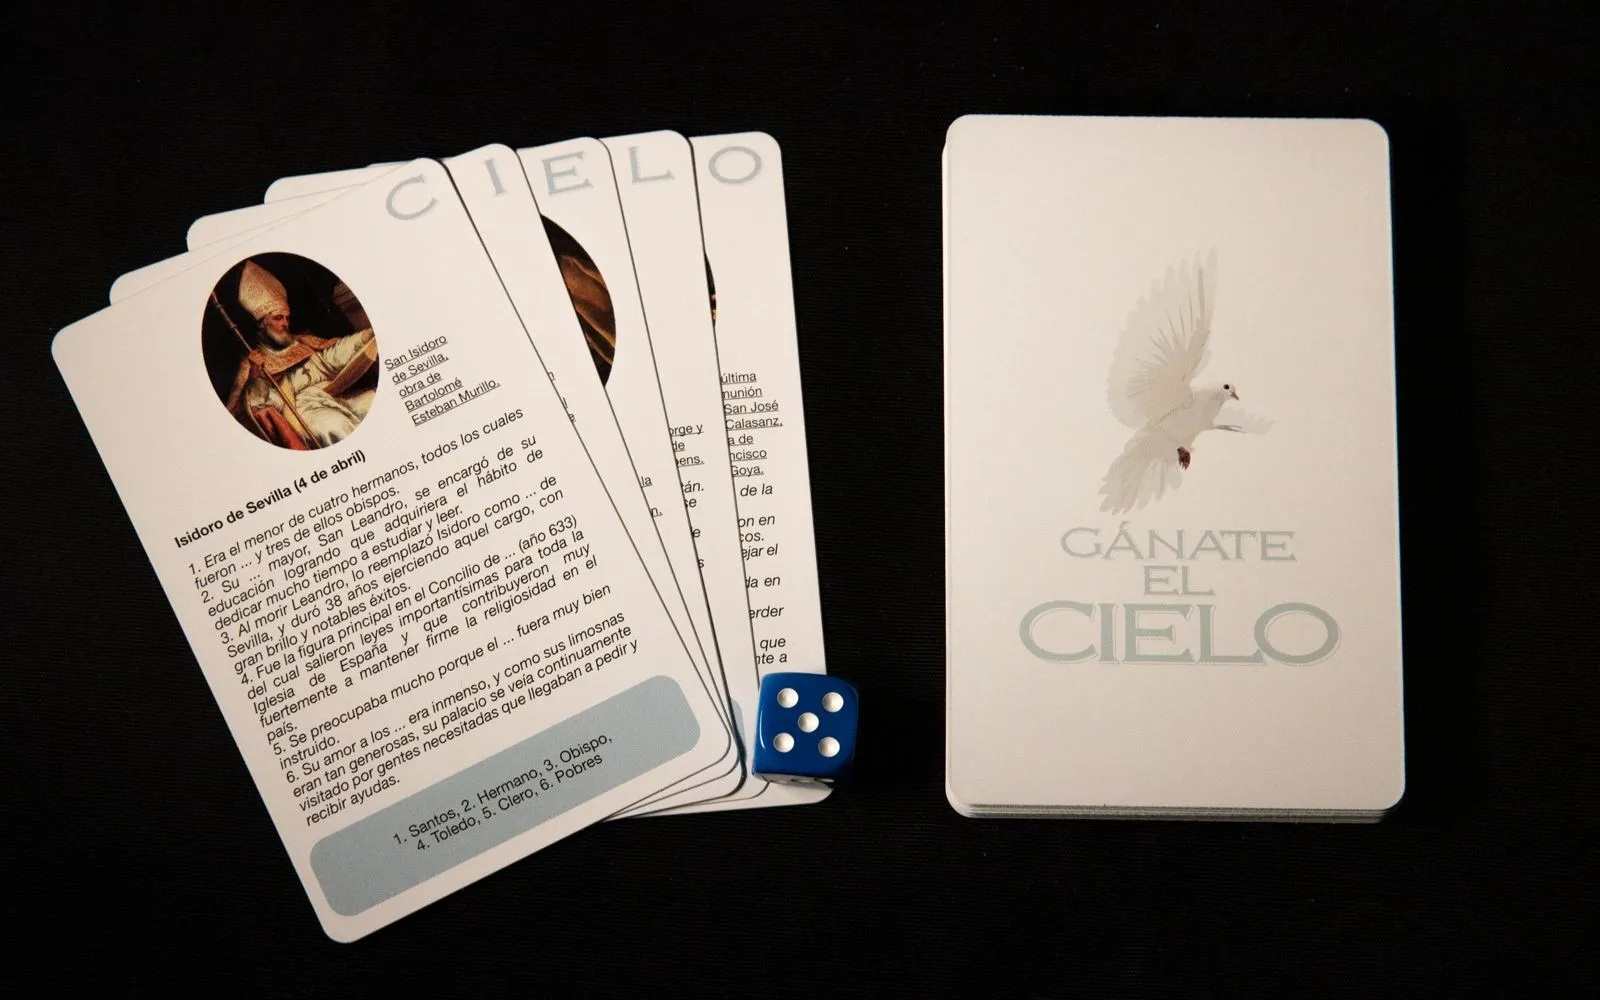 "Gánate el cielo", el juego de cartas sobre santos?w=200&h=150